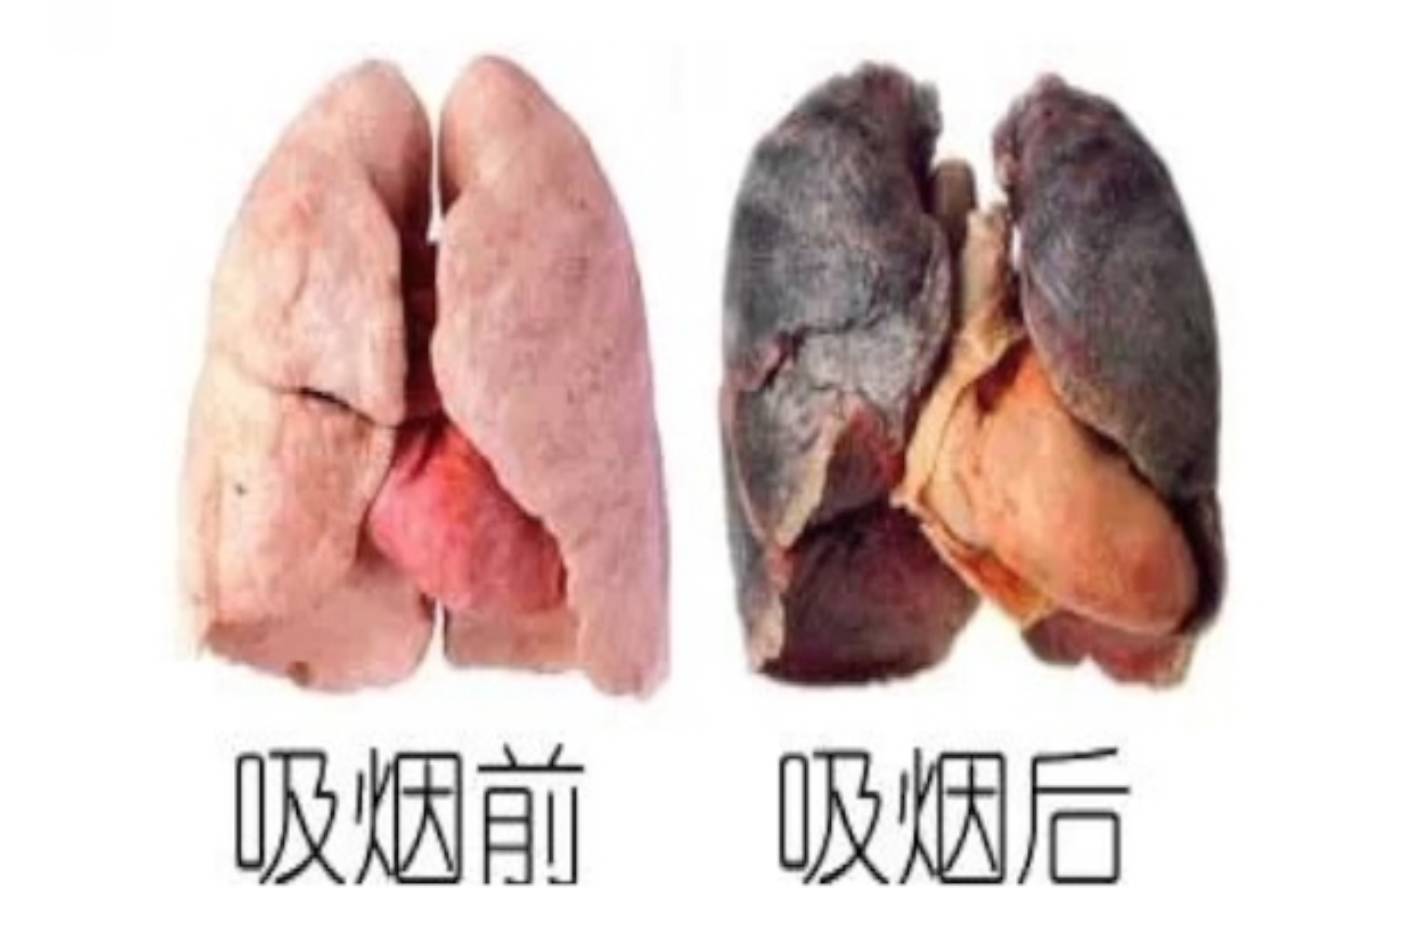 吸烟者的肺图片 壁纸图片